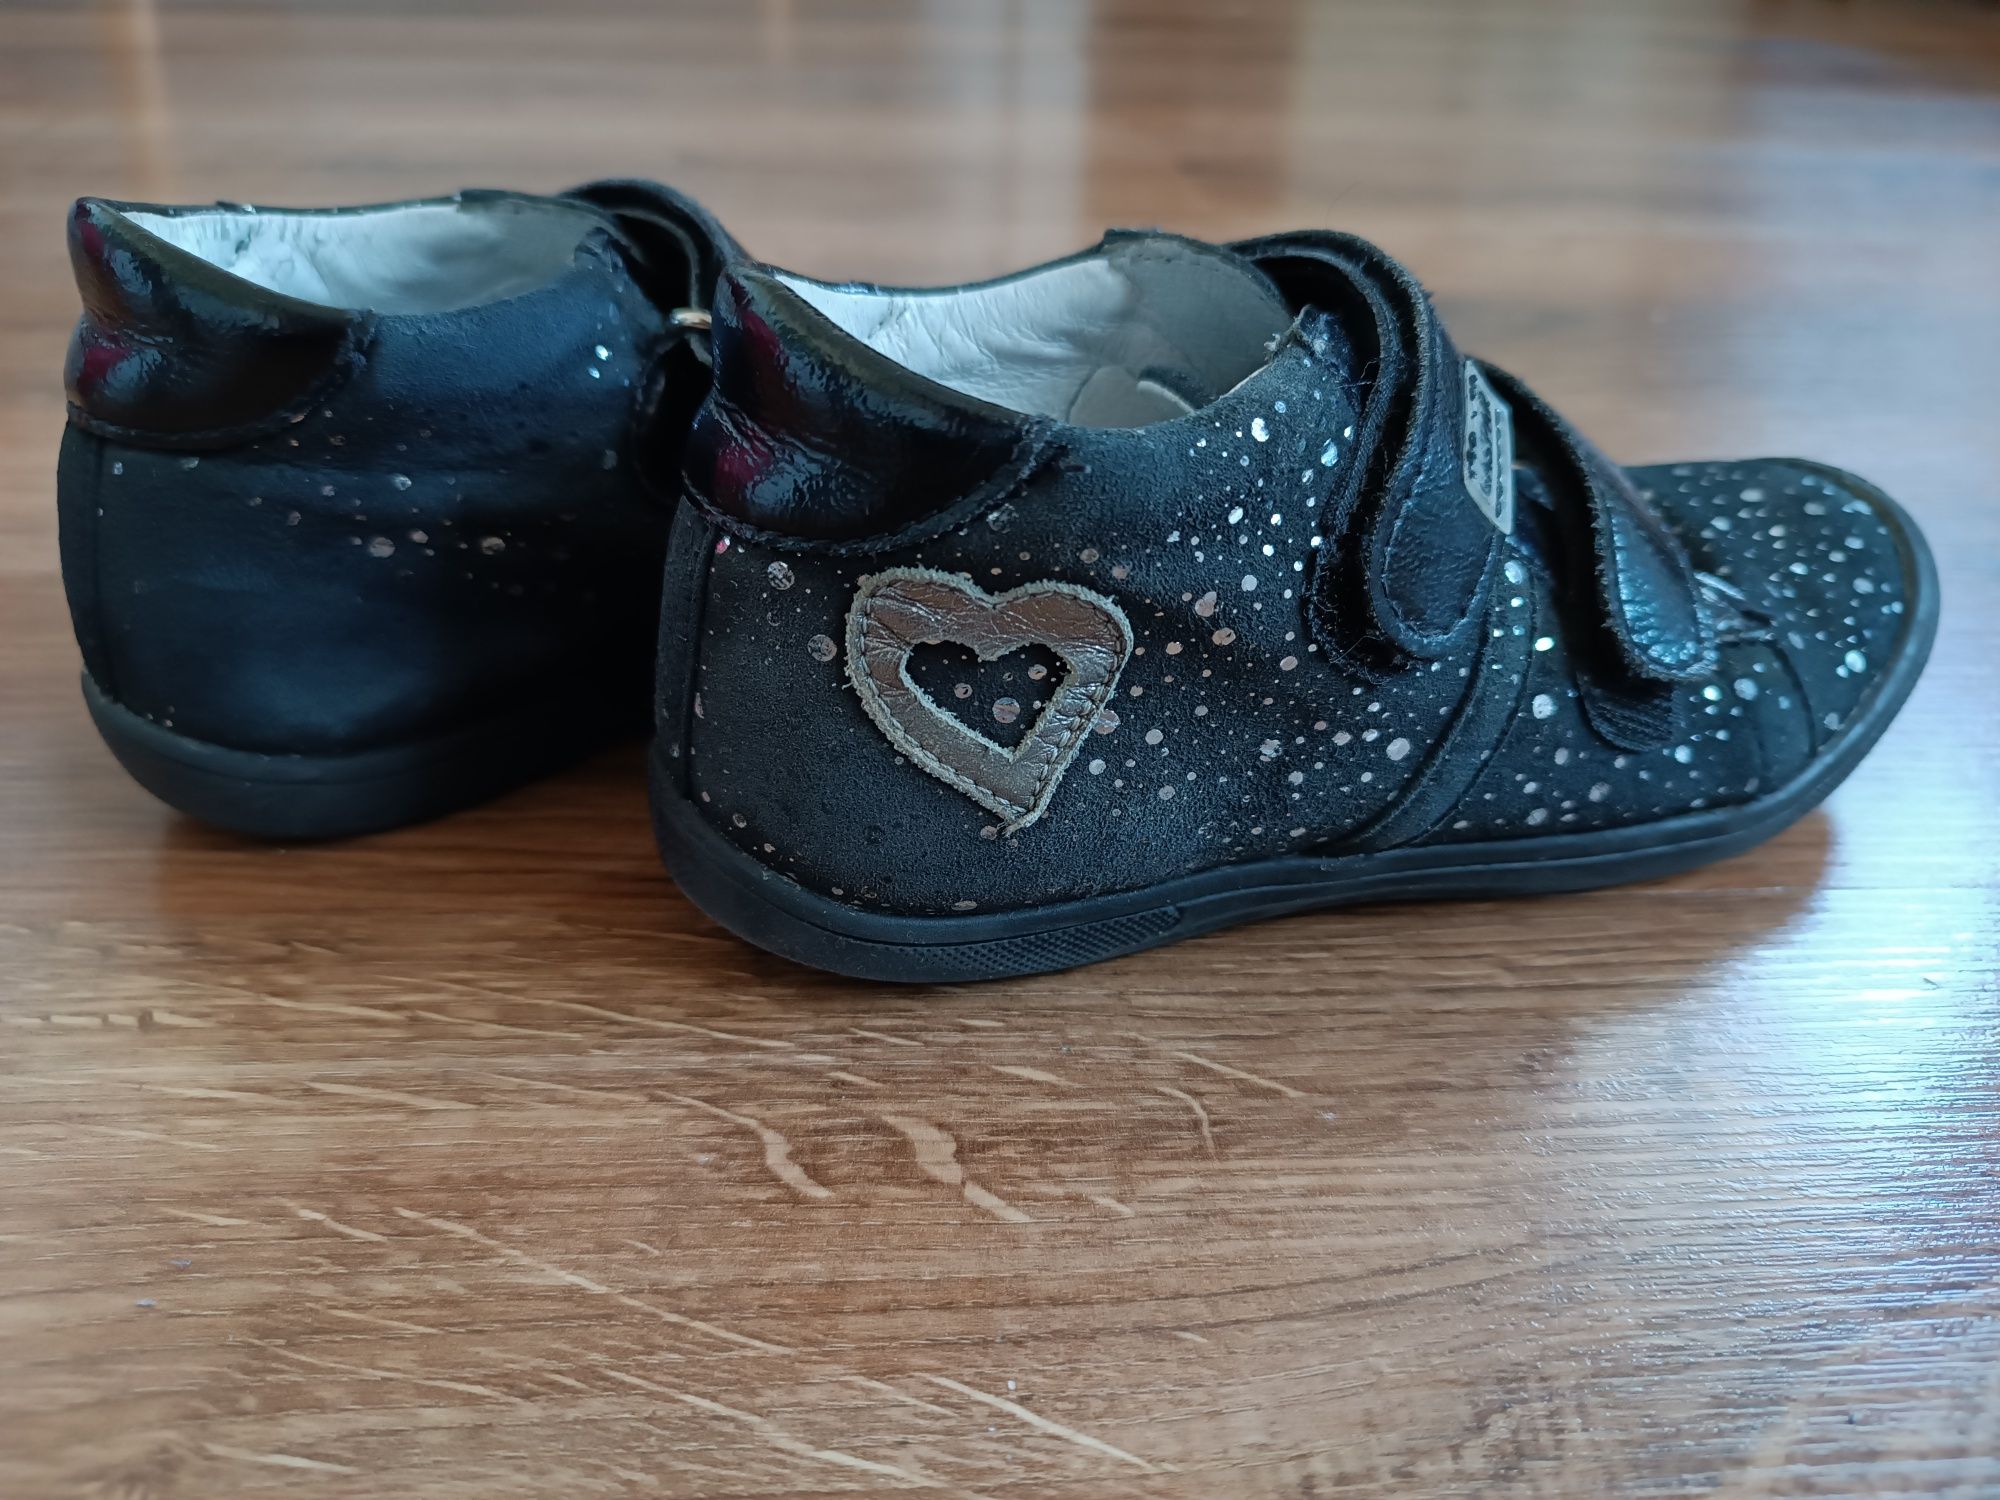 Buty dla dziewczynki Gaspar, rozmiar 29 wkładka 19 cm